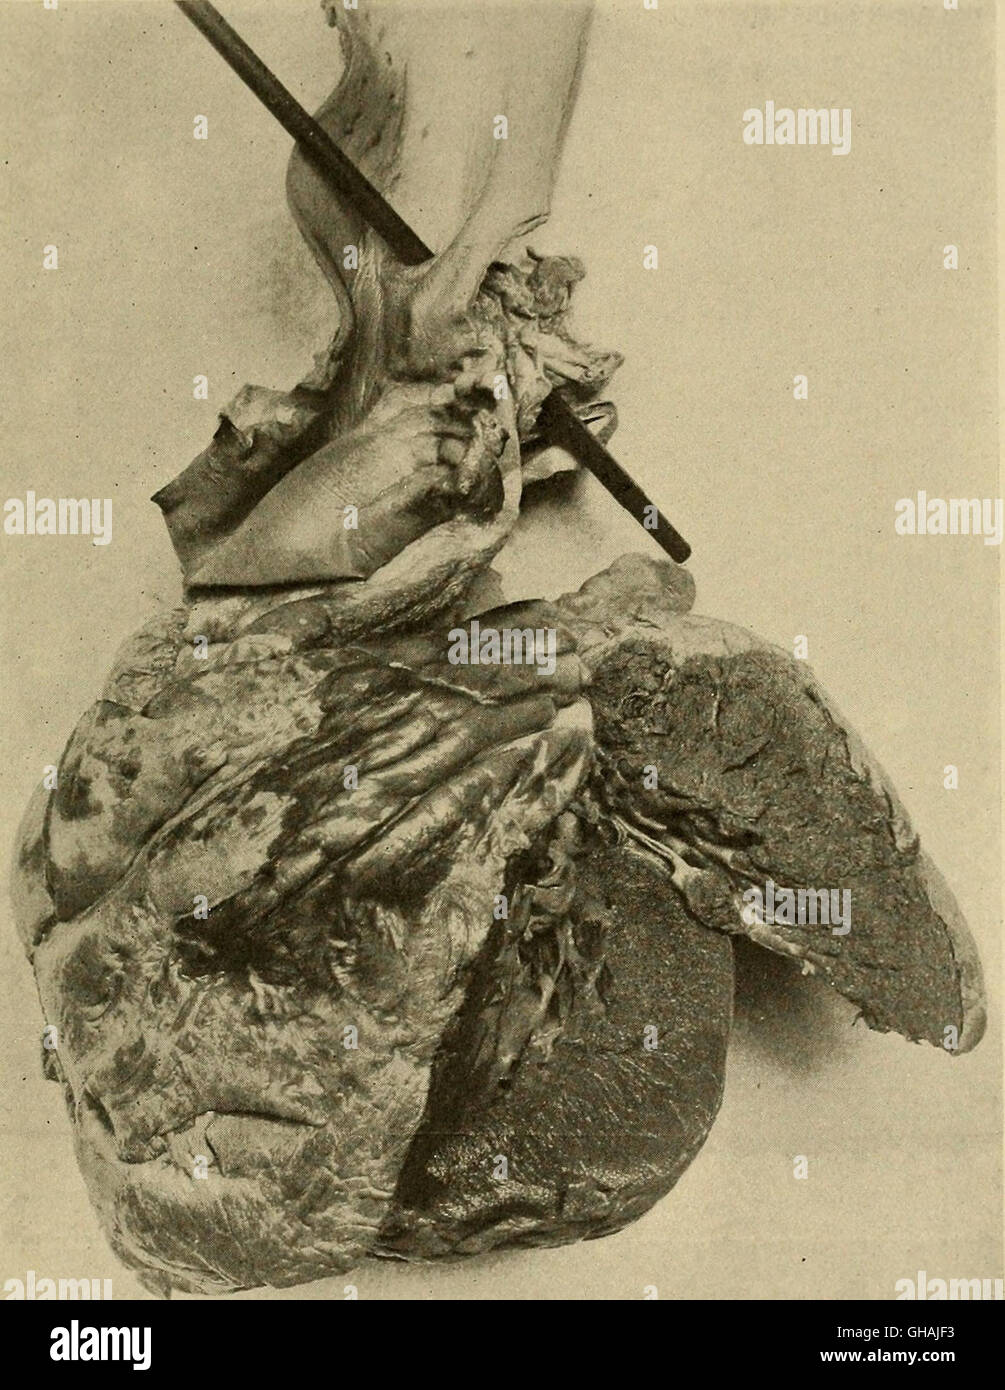 Les maladies du cœur et du système artériel ; conçu pour être une présentation de l'objet à l'usage des étudiants et praticiens de médecine (1910) Banque D'Images